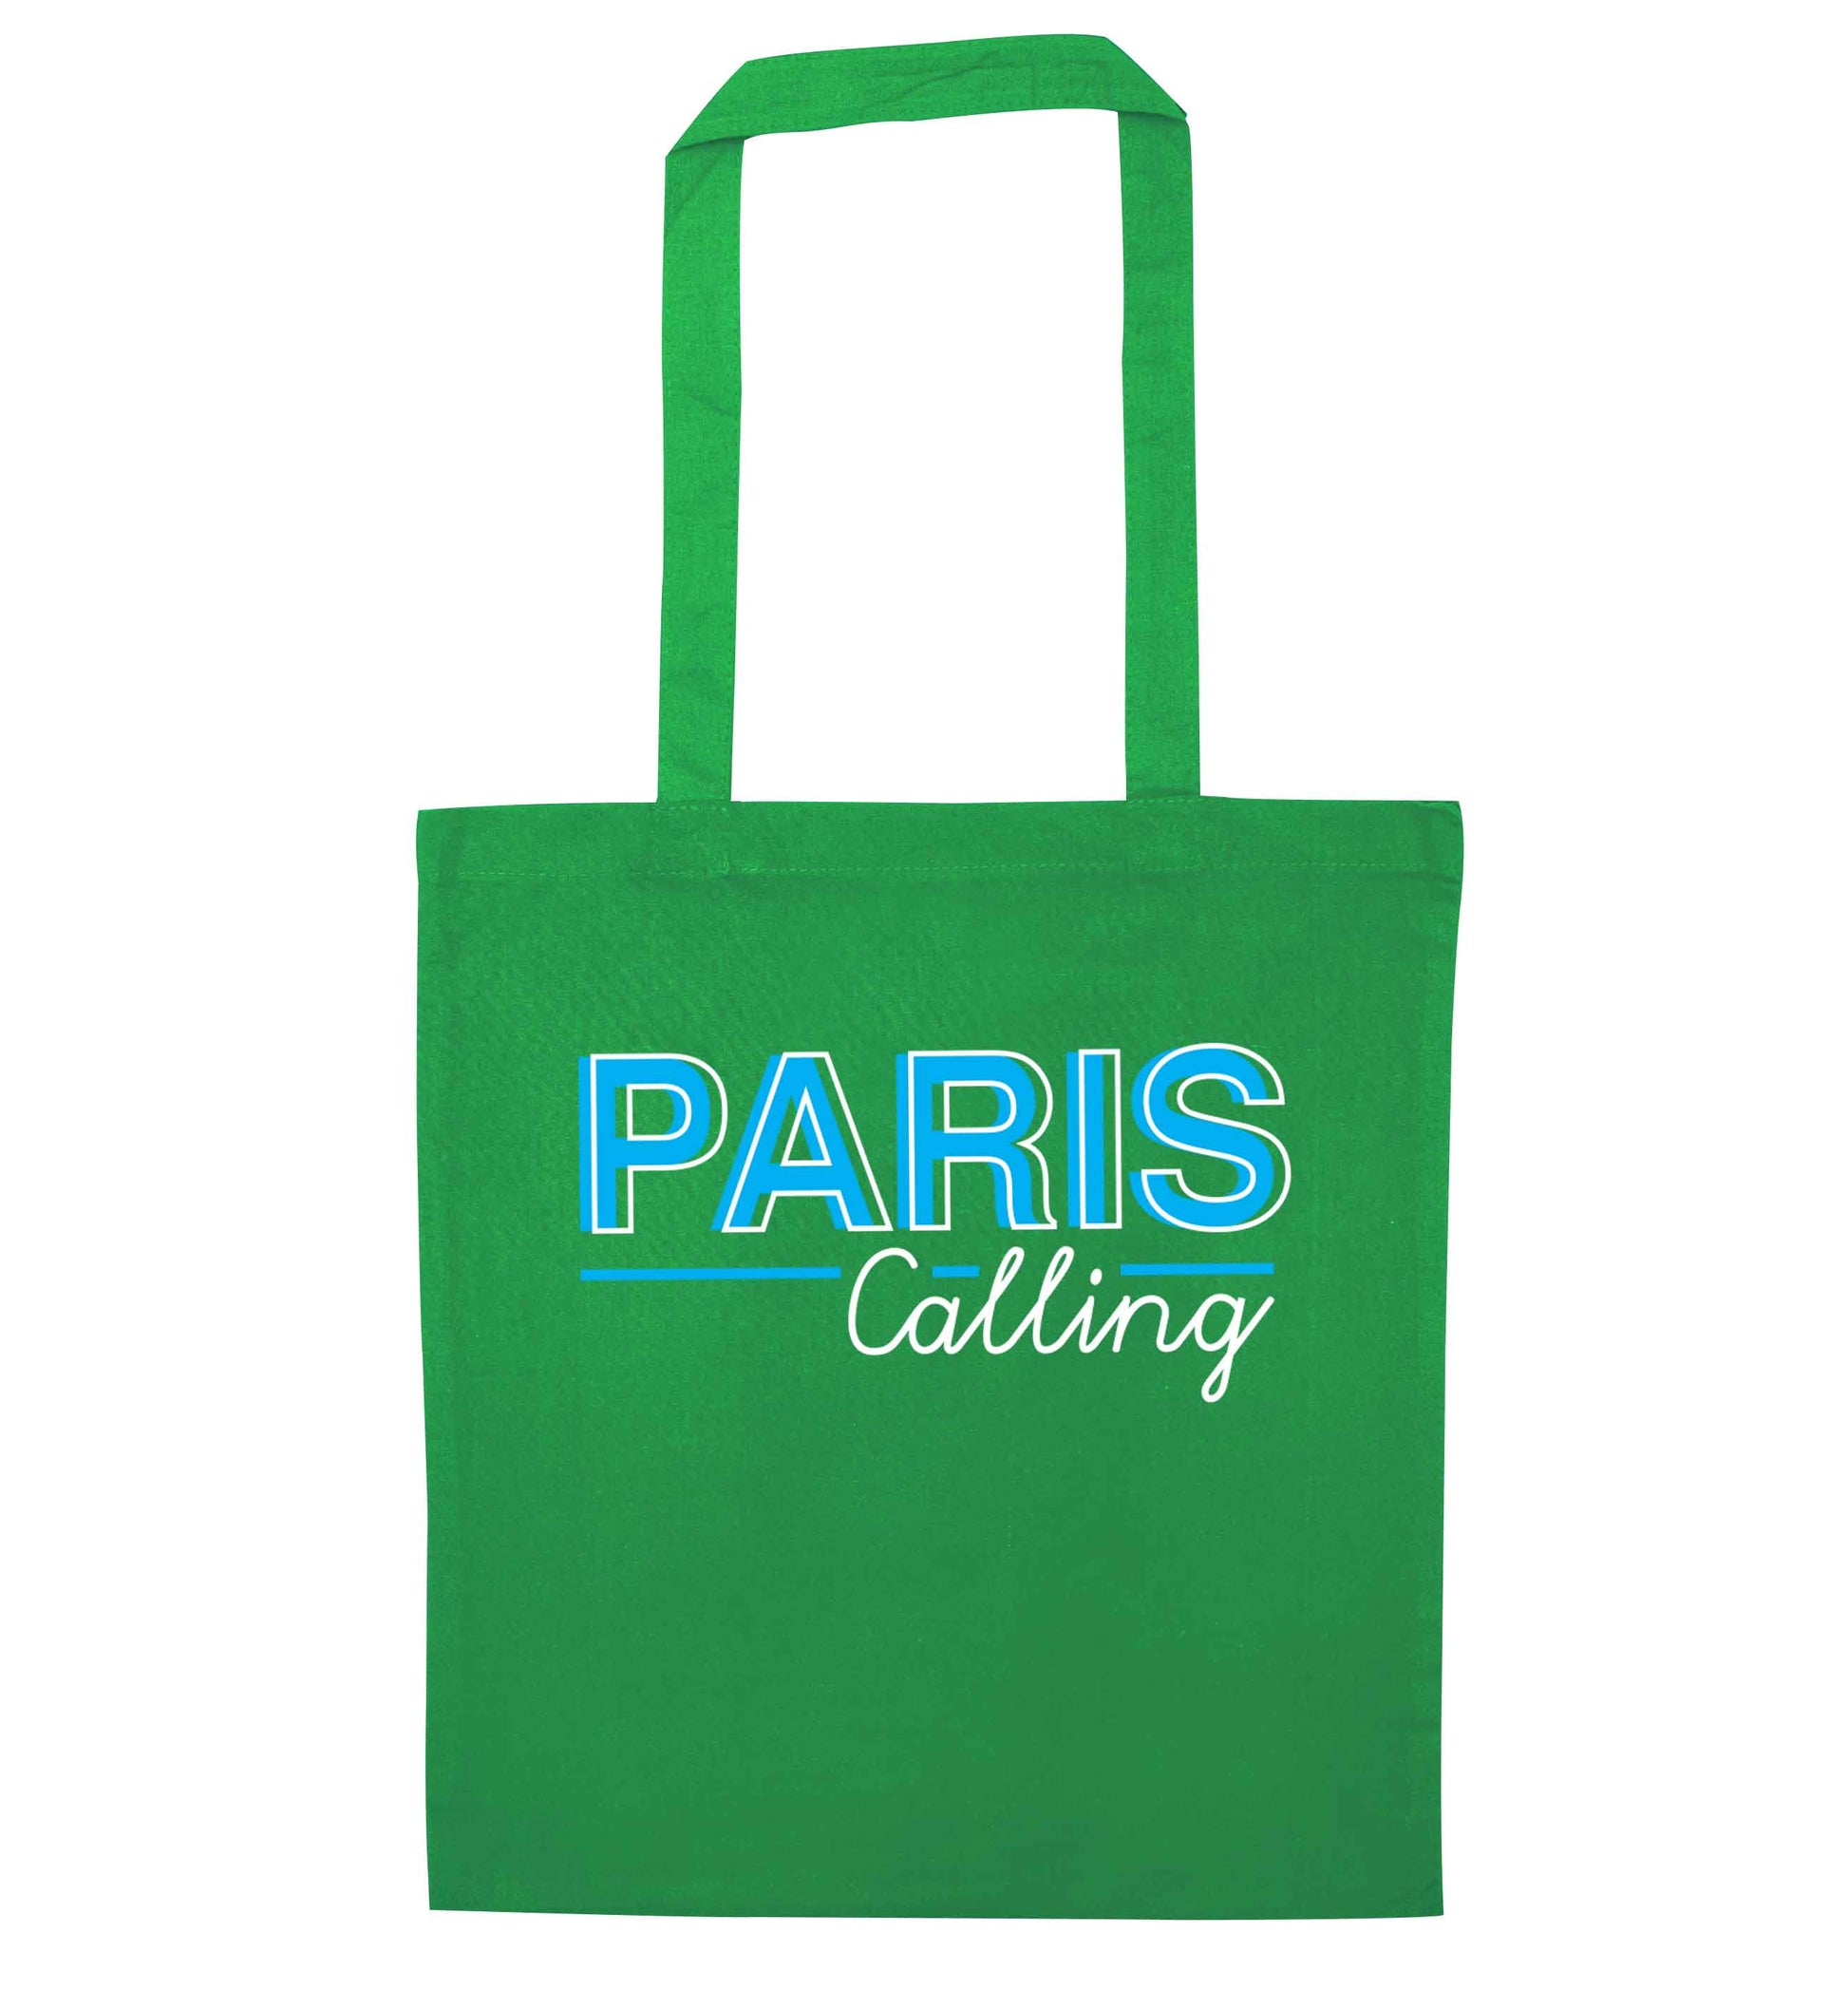 Paris calling green tote bag